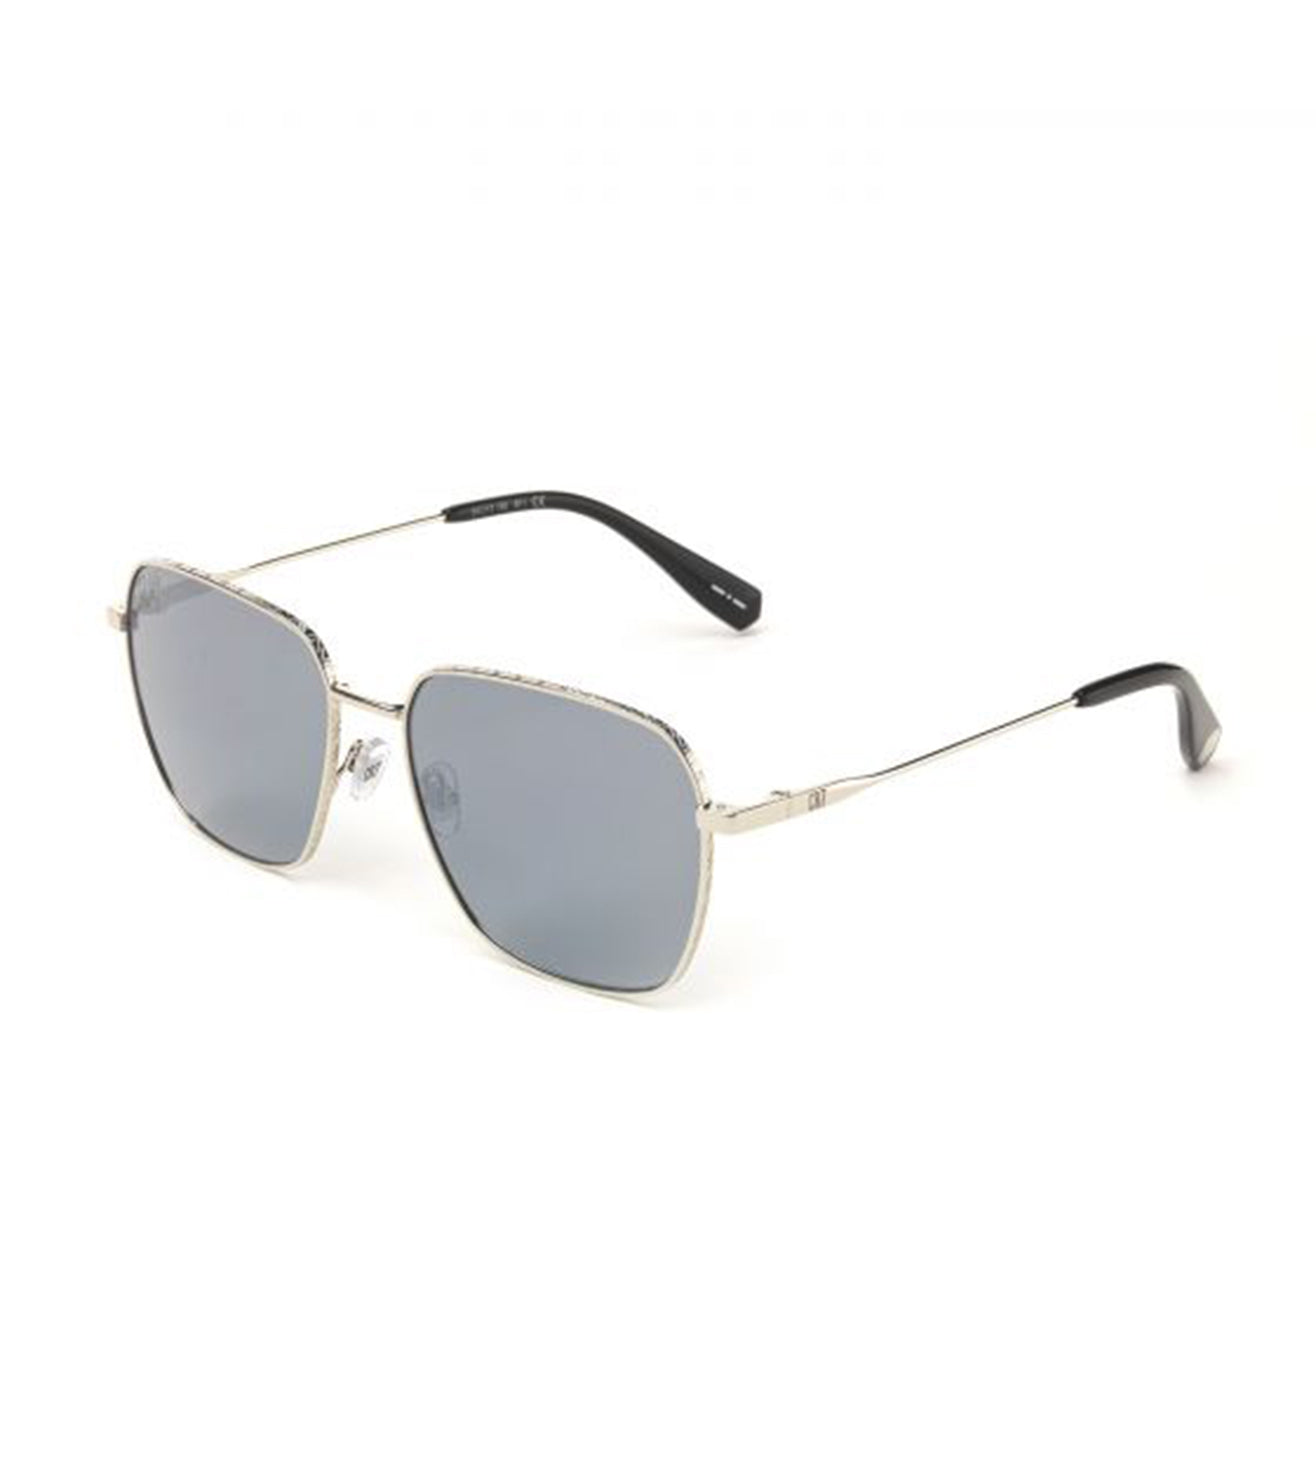 CR7 Silver Square Sunglasses